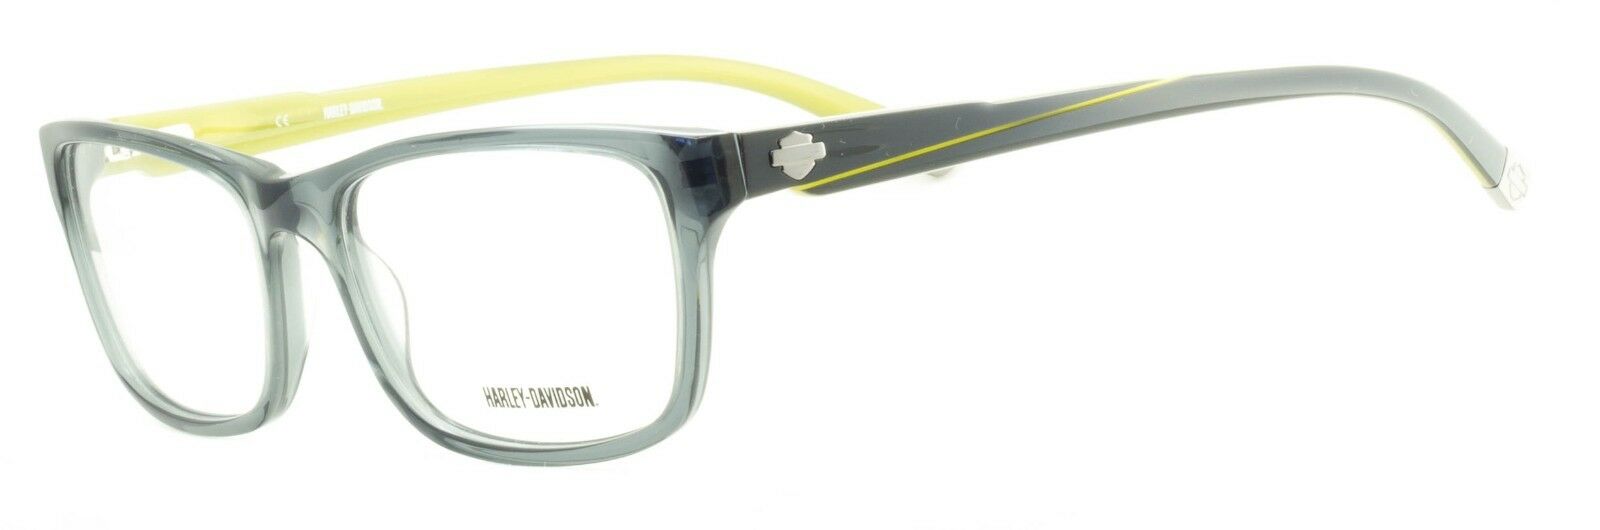 HARLEY-DAVIDSON HD 492 GRY Eyewear FRAMES RX Optical Eyeglasses Glasses New BNIB